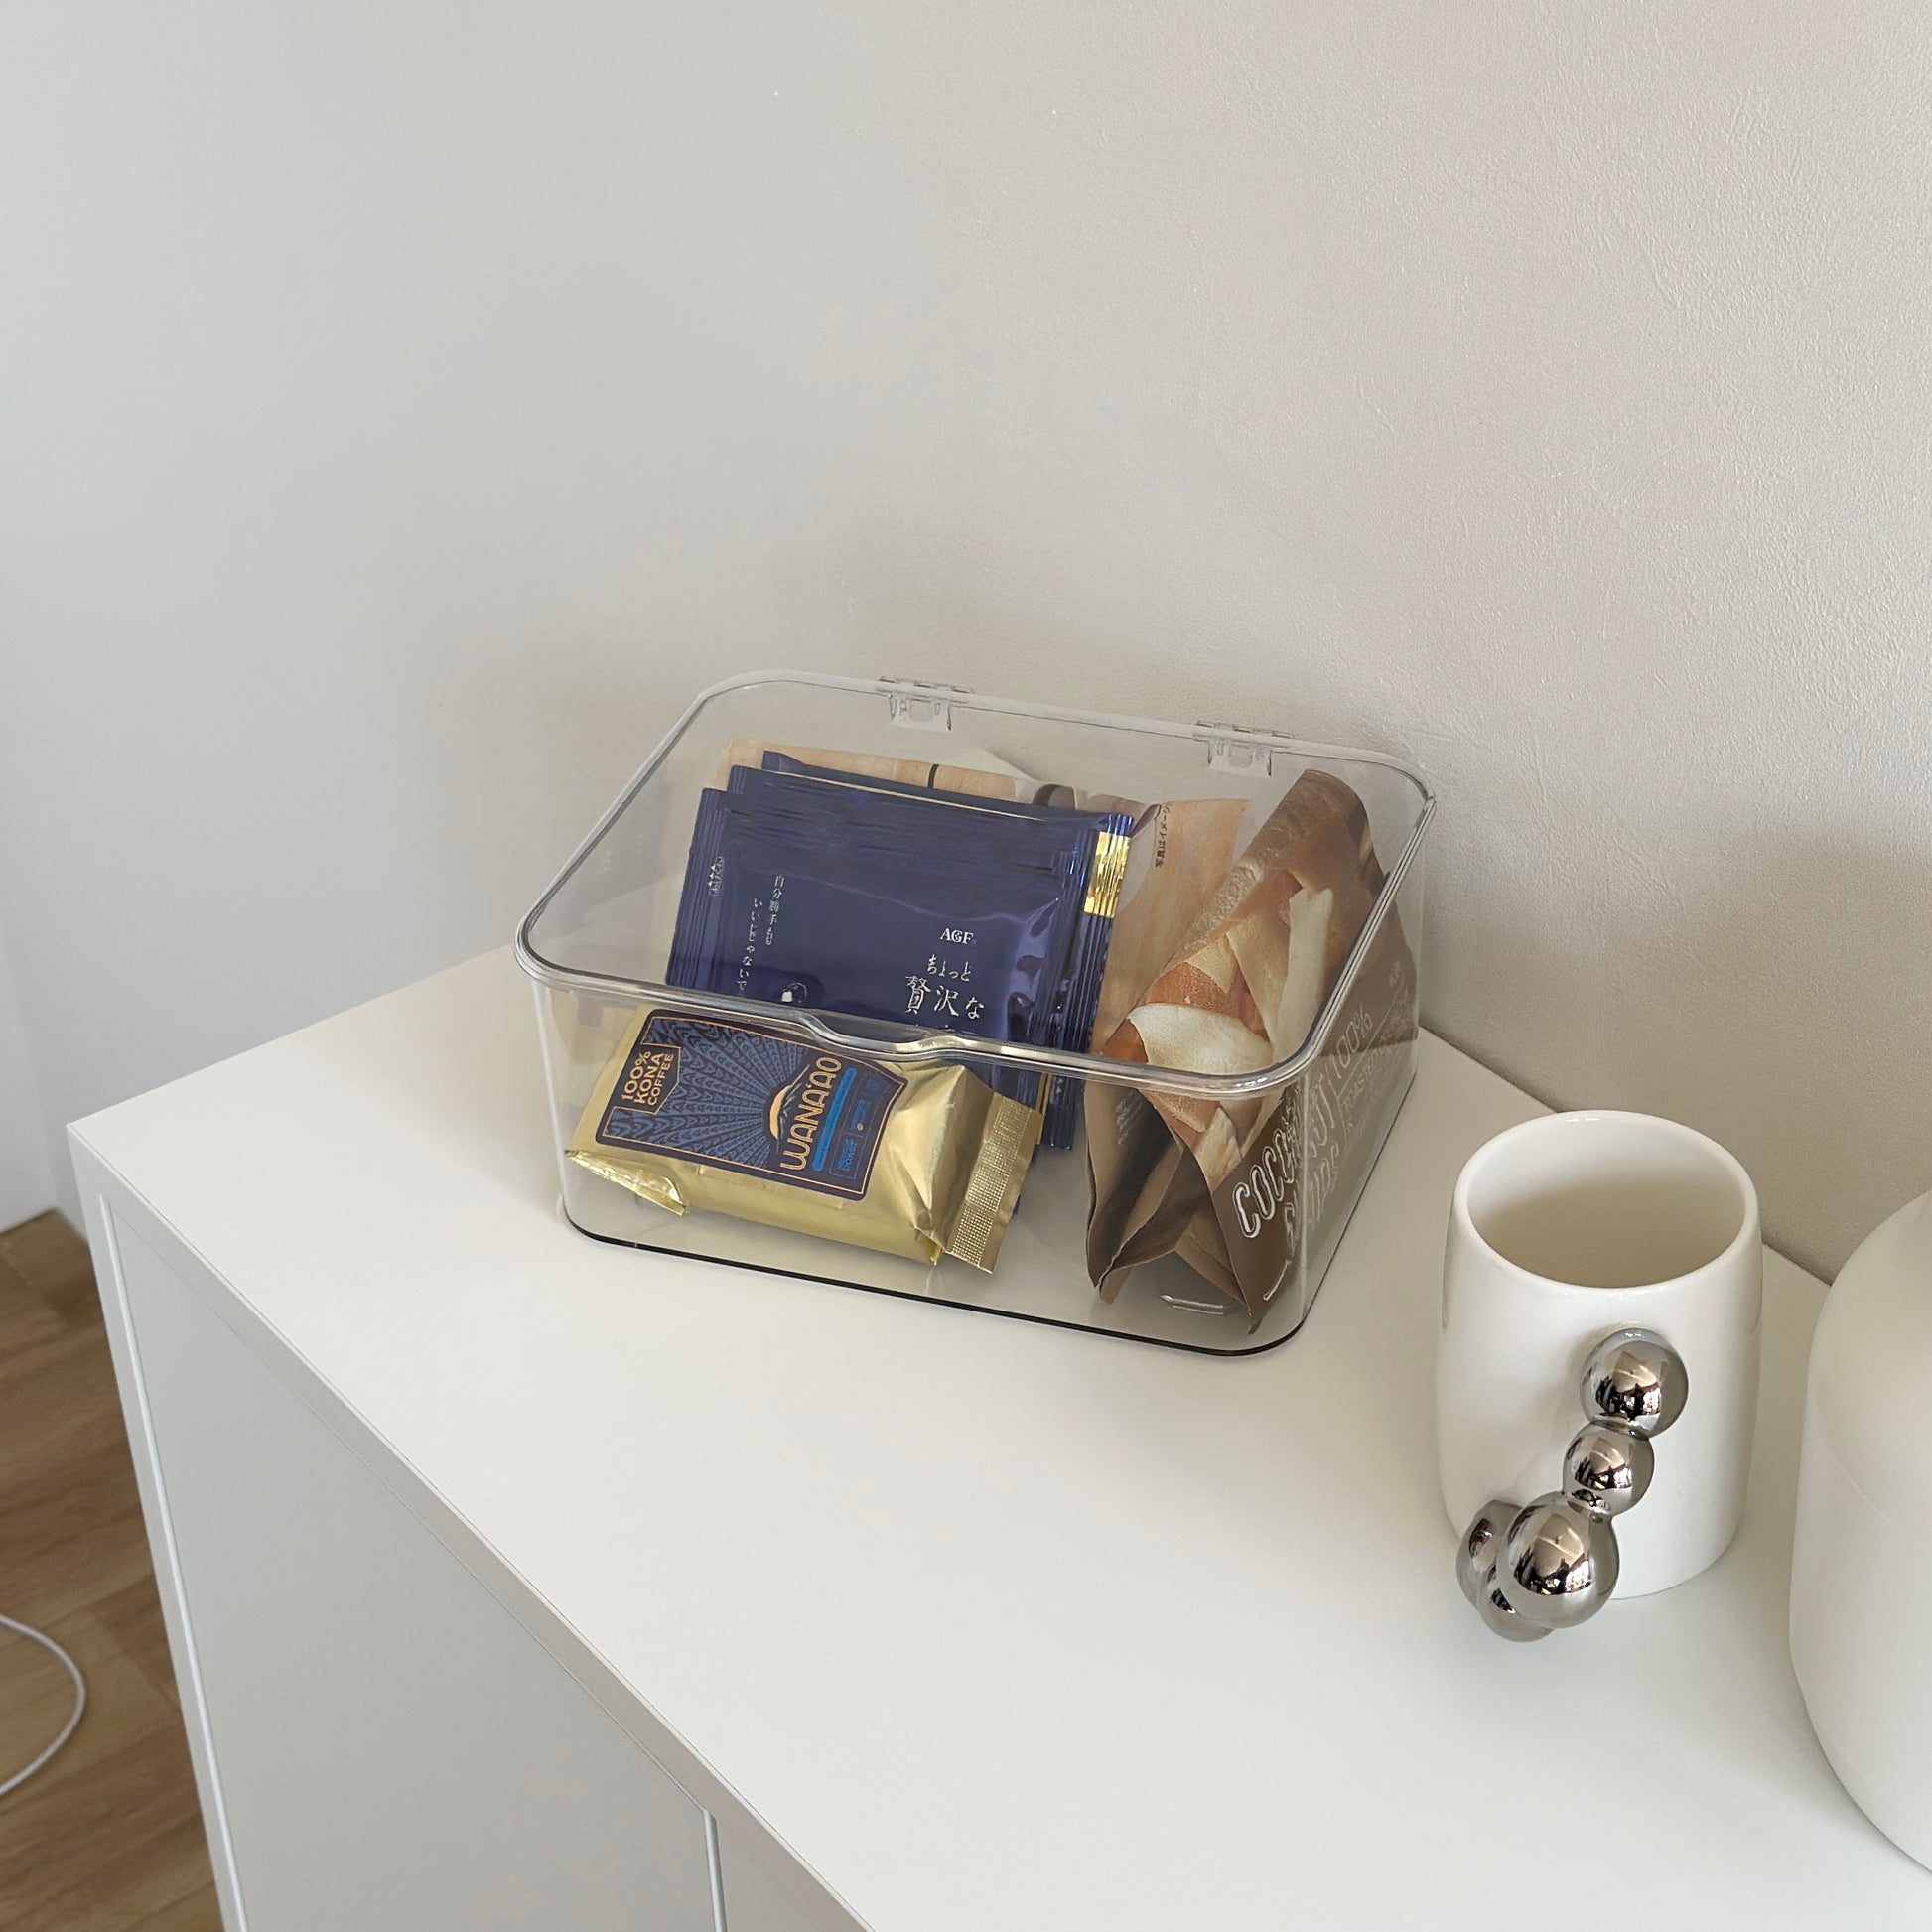 マグカップとケトルと透明のボックスの中にコーヒーバッグが白い棚の上にあるインテリア